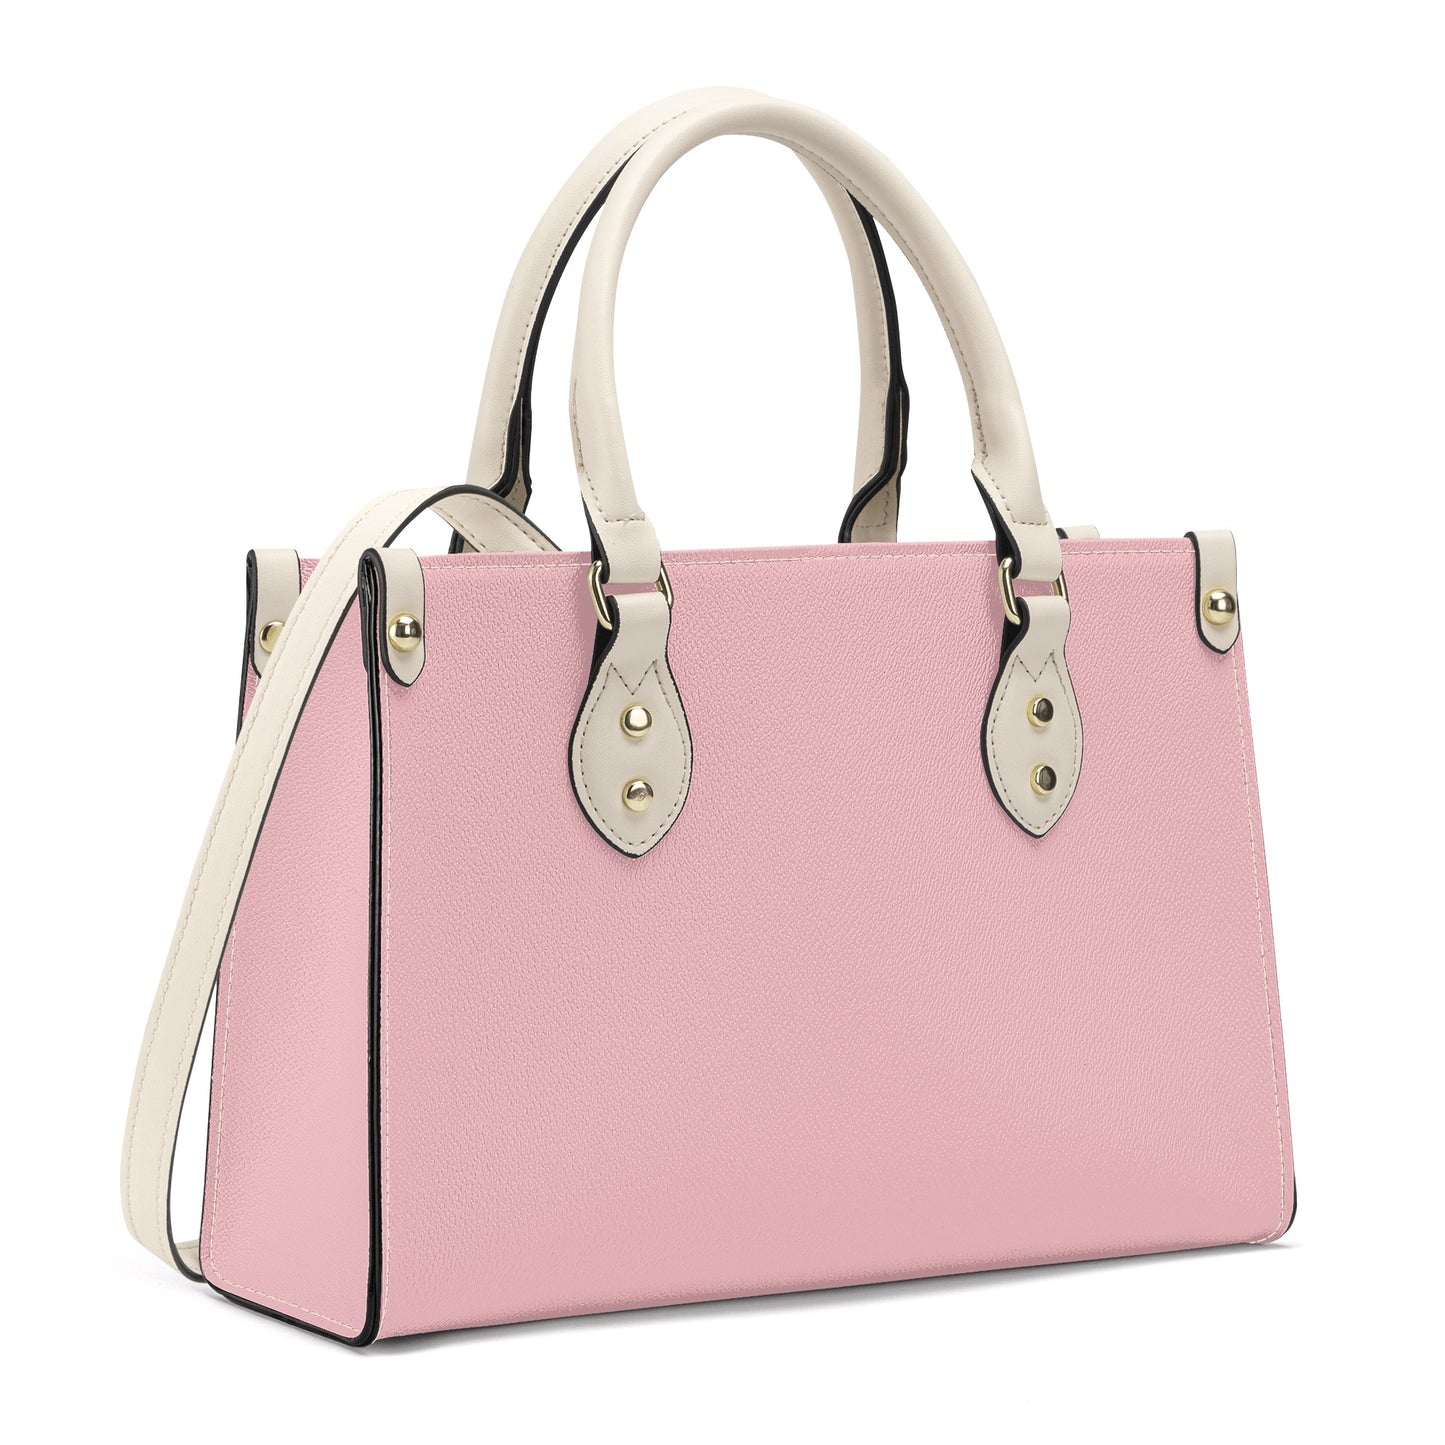 Ginger - Luxury Women Handbag